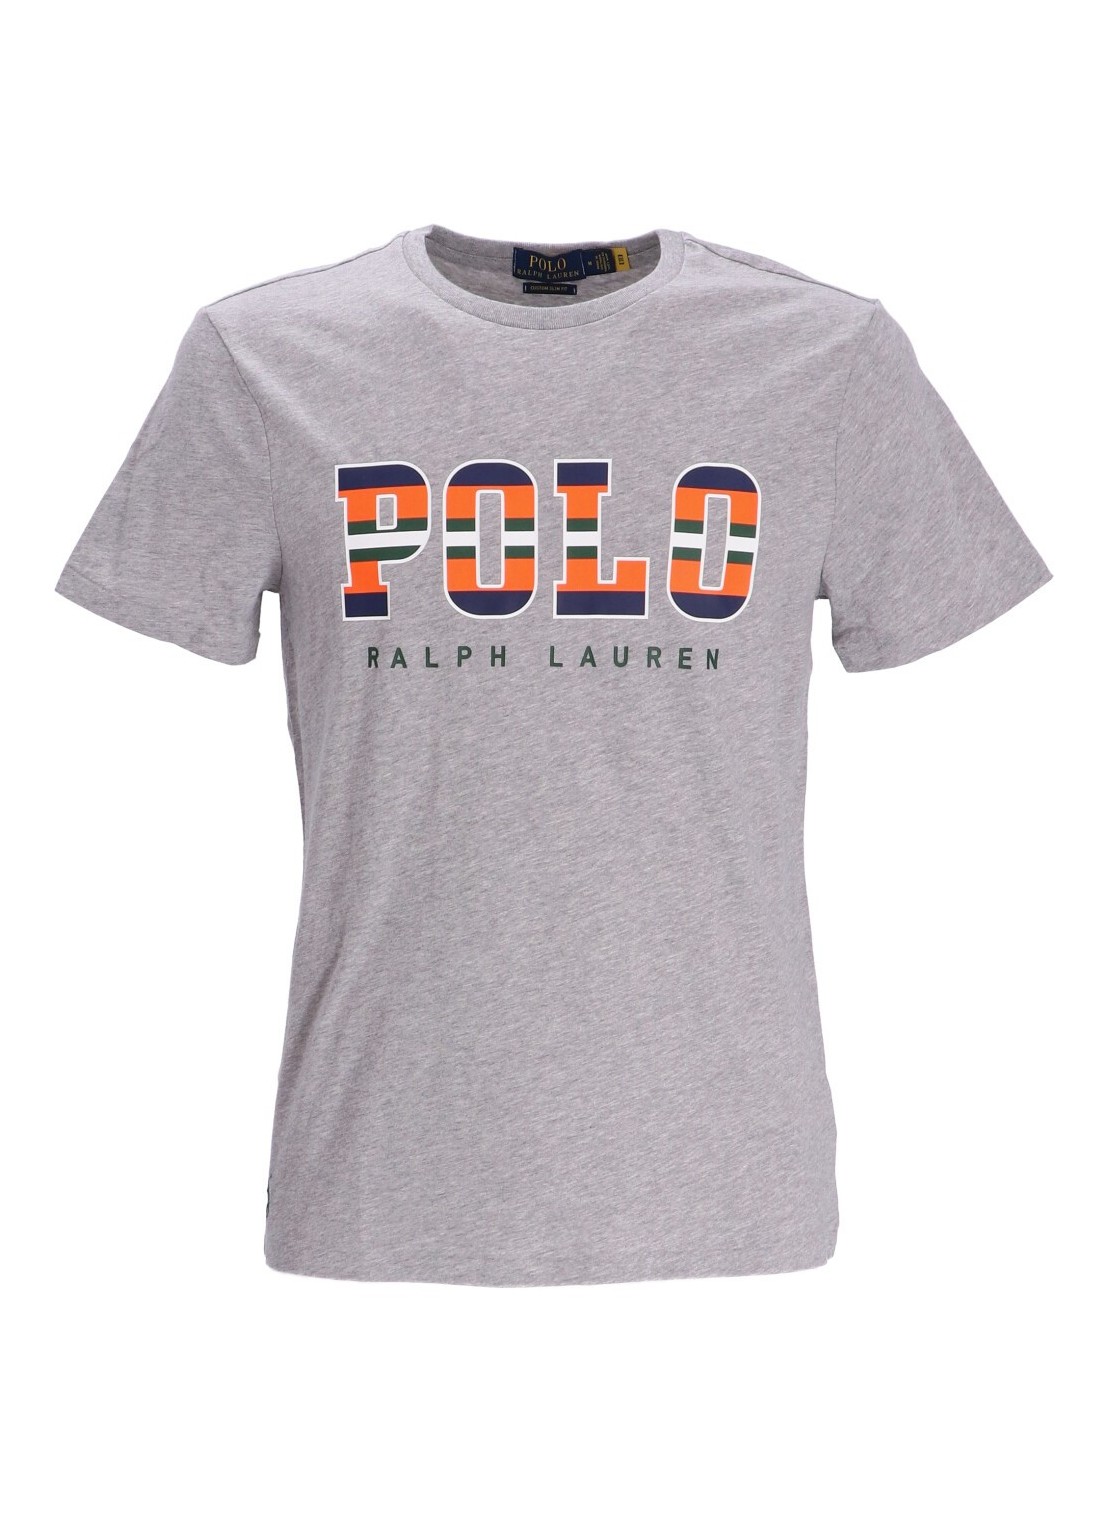 polo ralph lauren sscncmslm1-short sleeve-t-shirt - 710872323002 ...